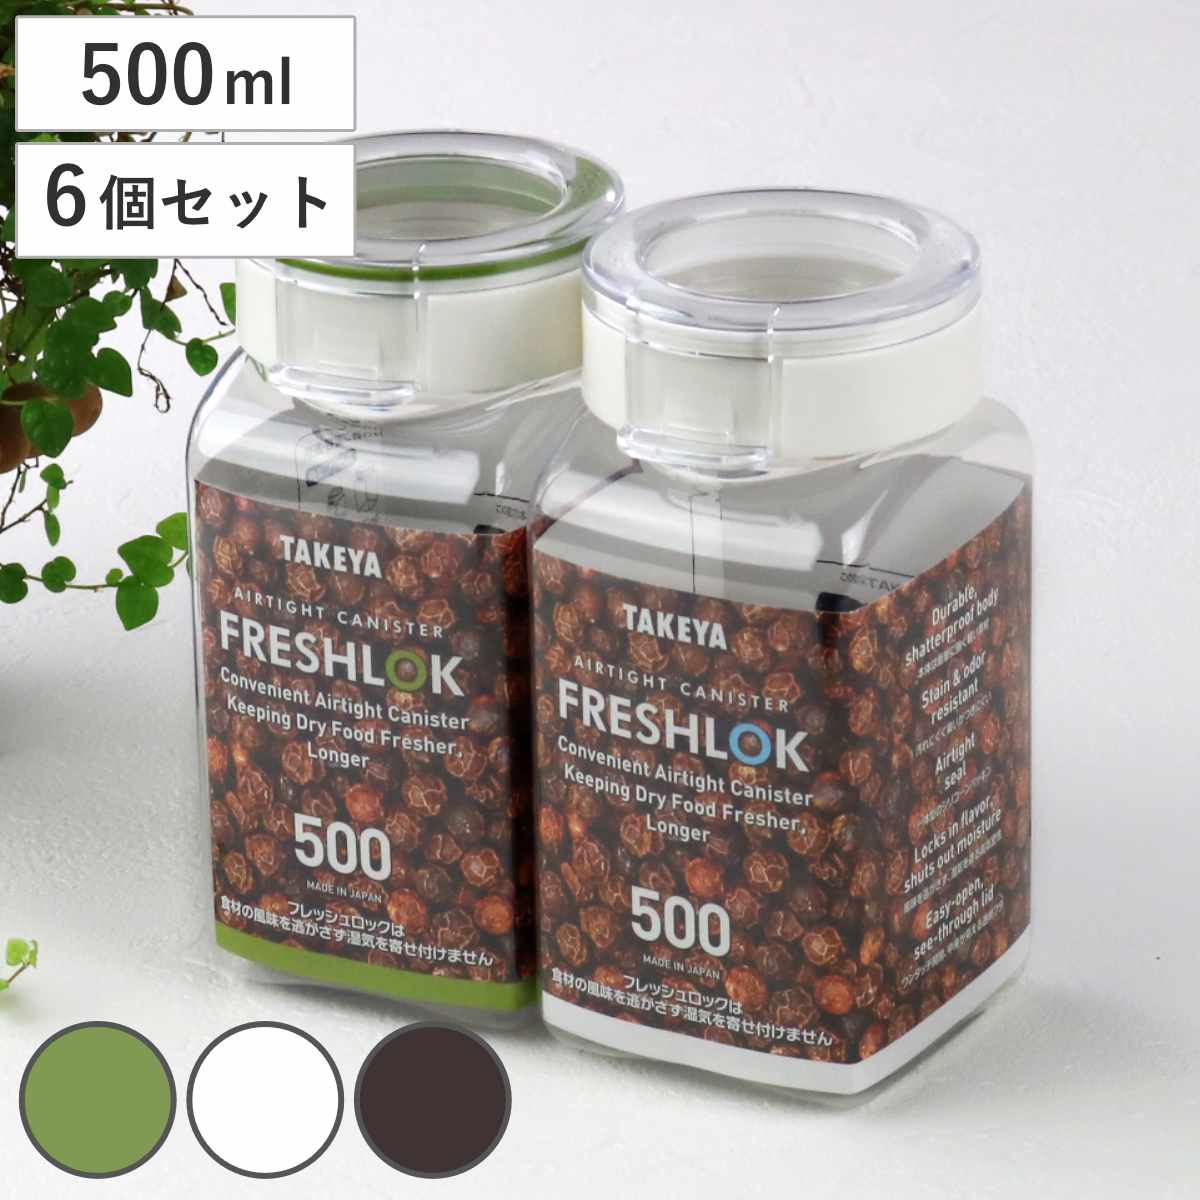 保存容器 500ml フレッシュロック 角型 お得な6個セット 選べるカラー 白 緑 茶